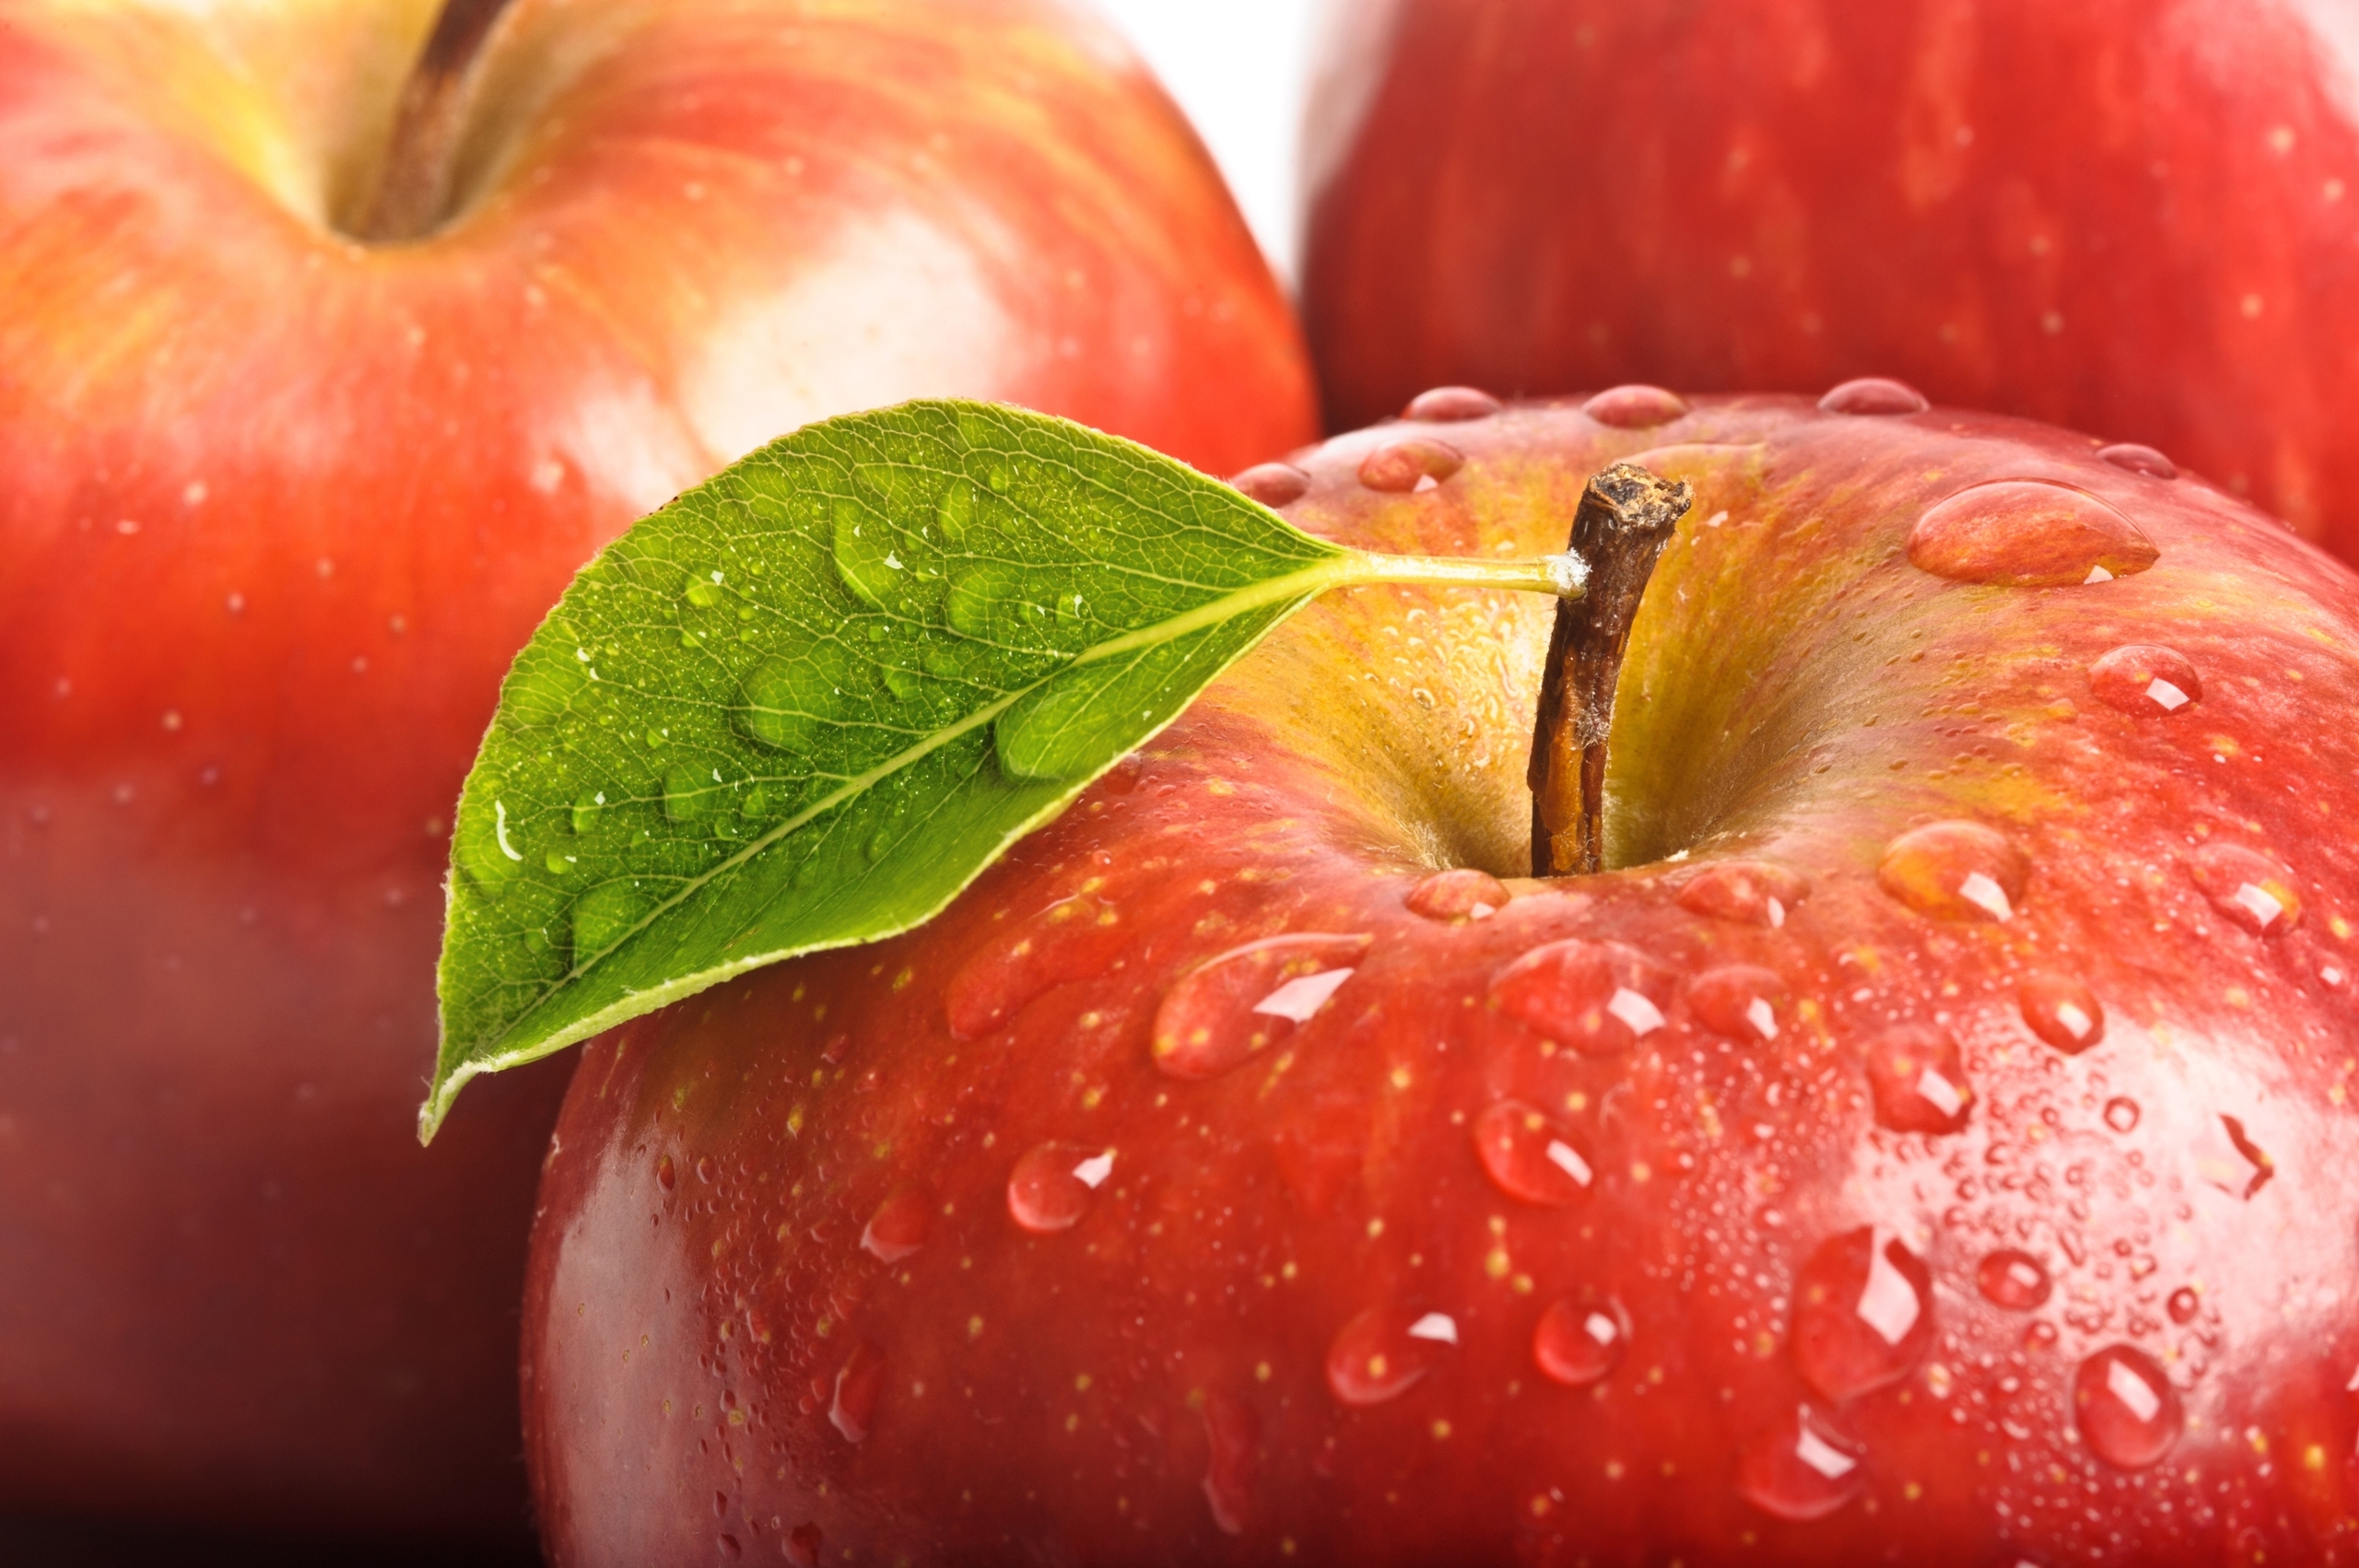 drops, food, fruits, apples, red Image for desktop